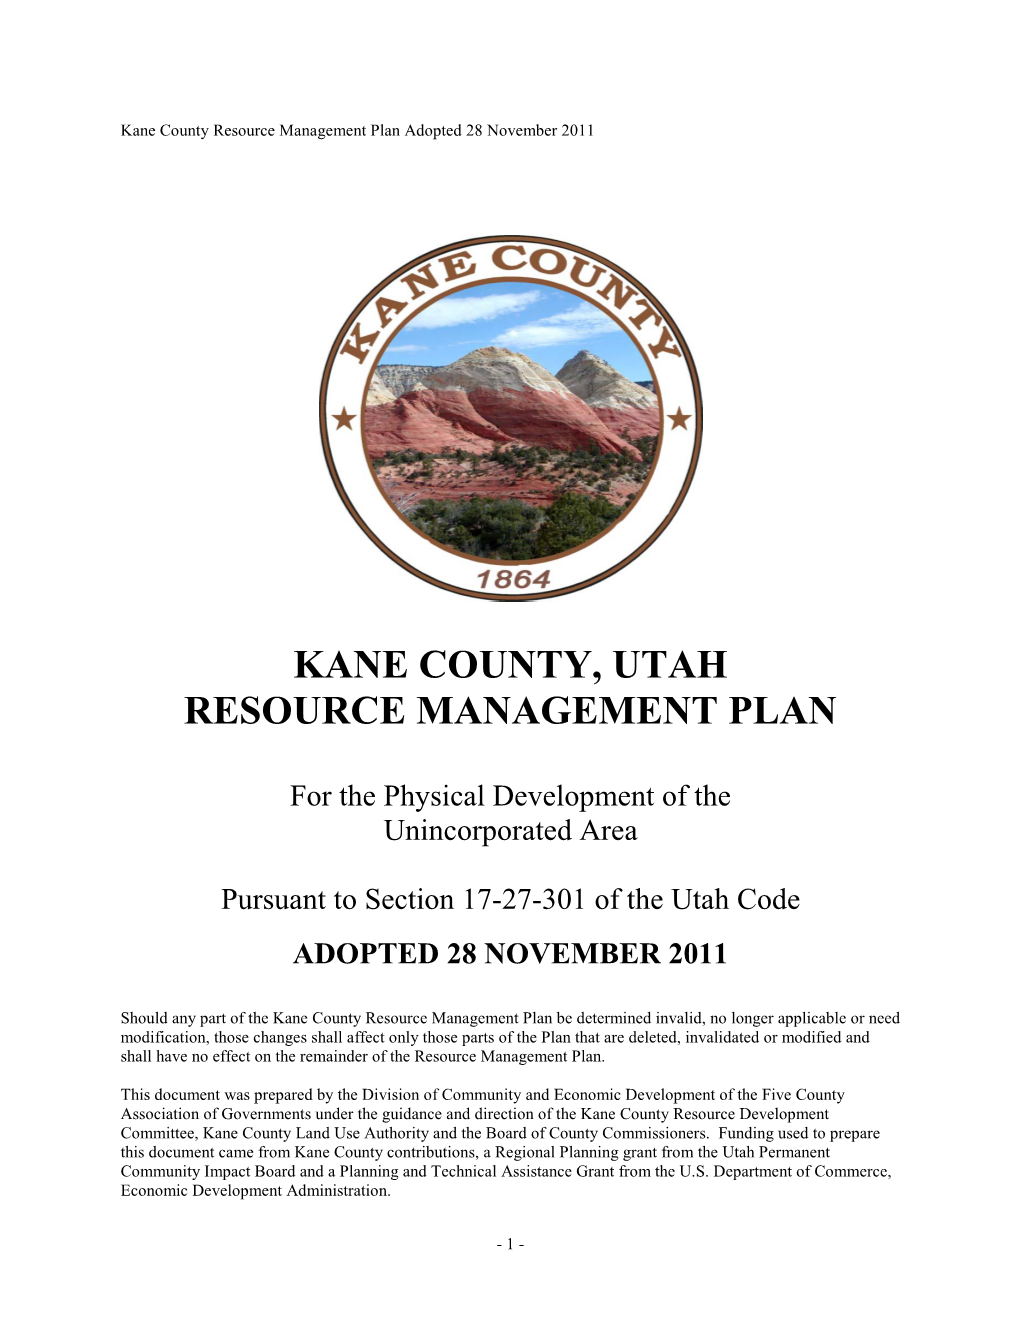 Kane County, Utah Resource Management Plan